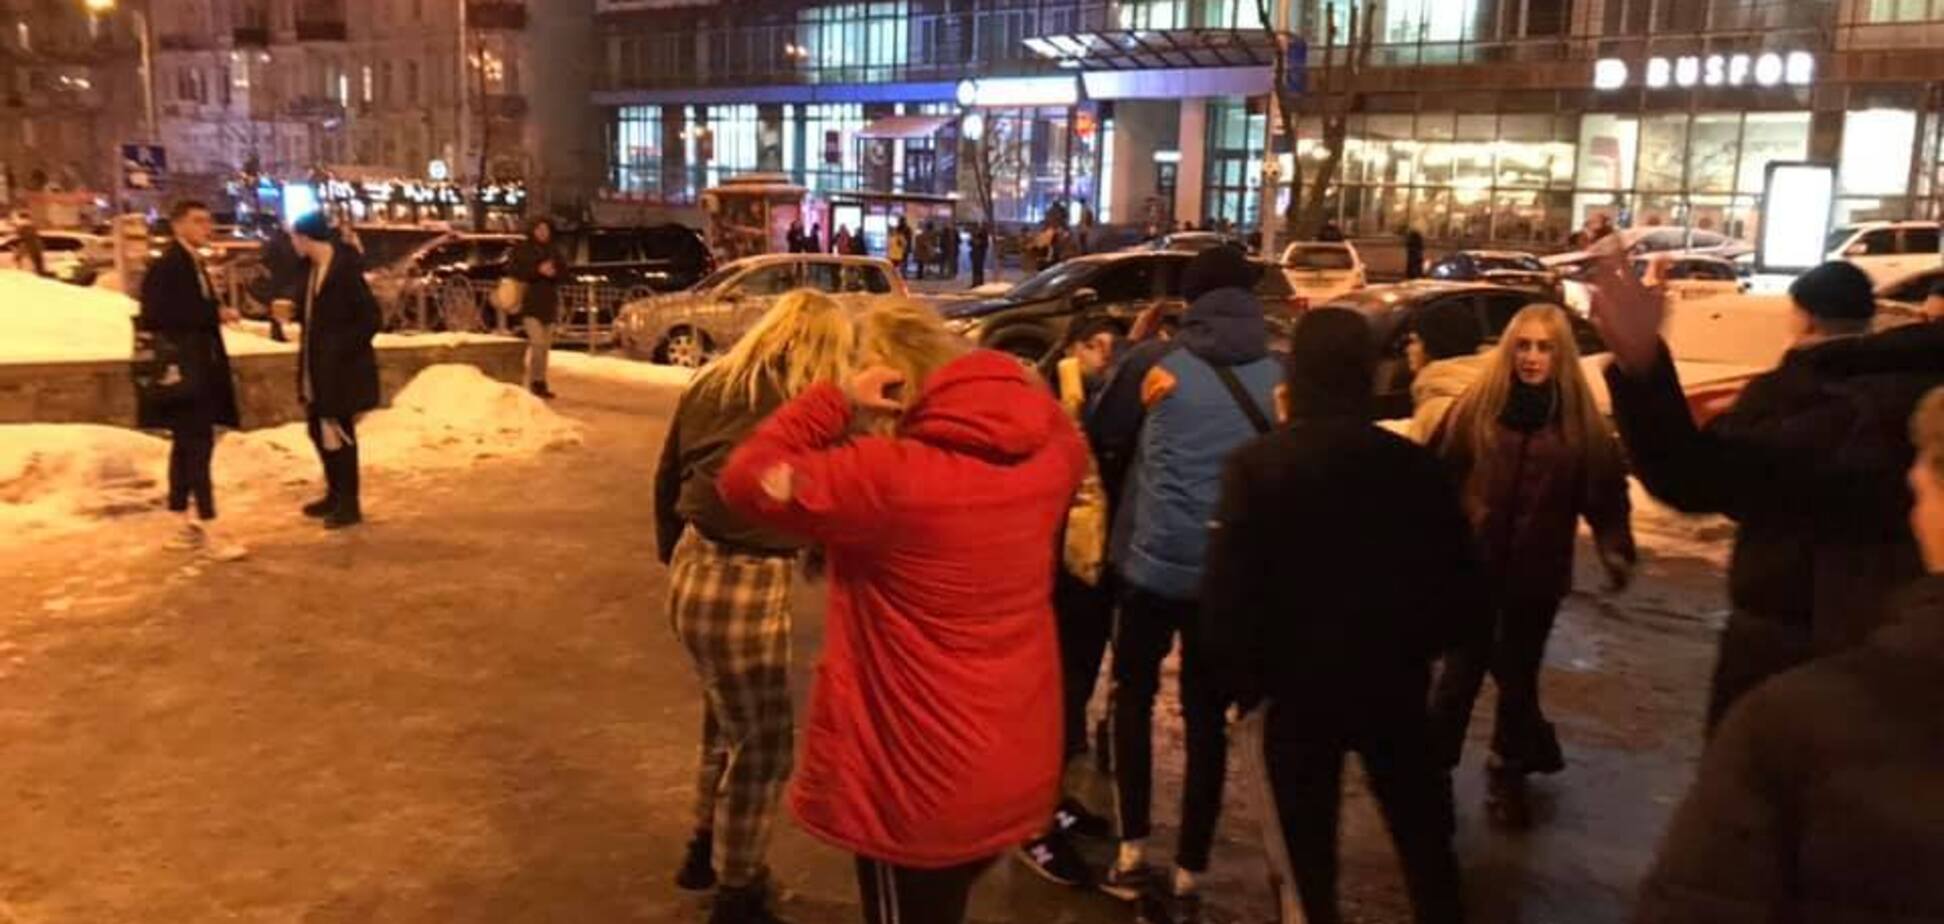 Били ногами и толкали: появились подробности нападения подростков в центре Киева 